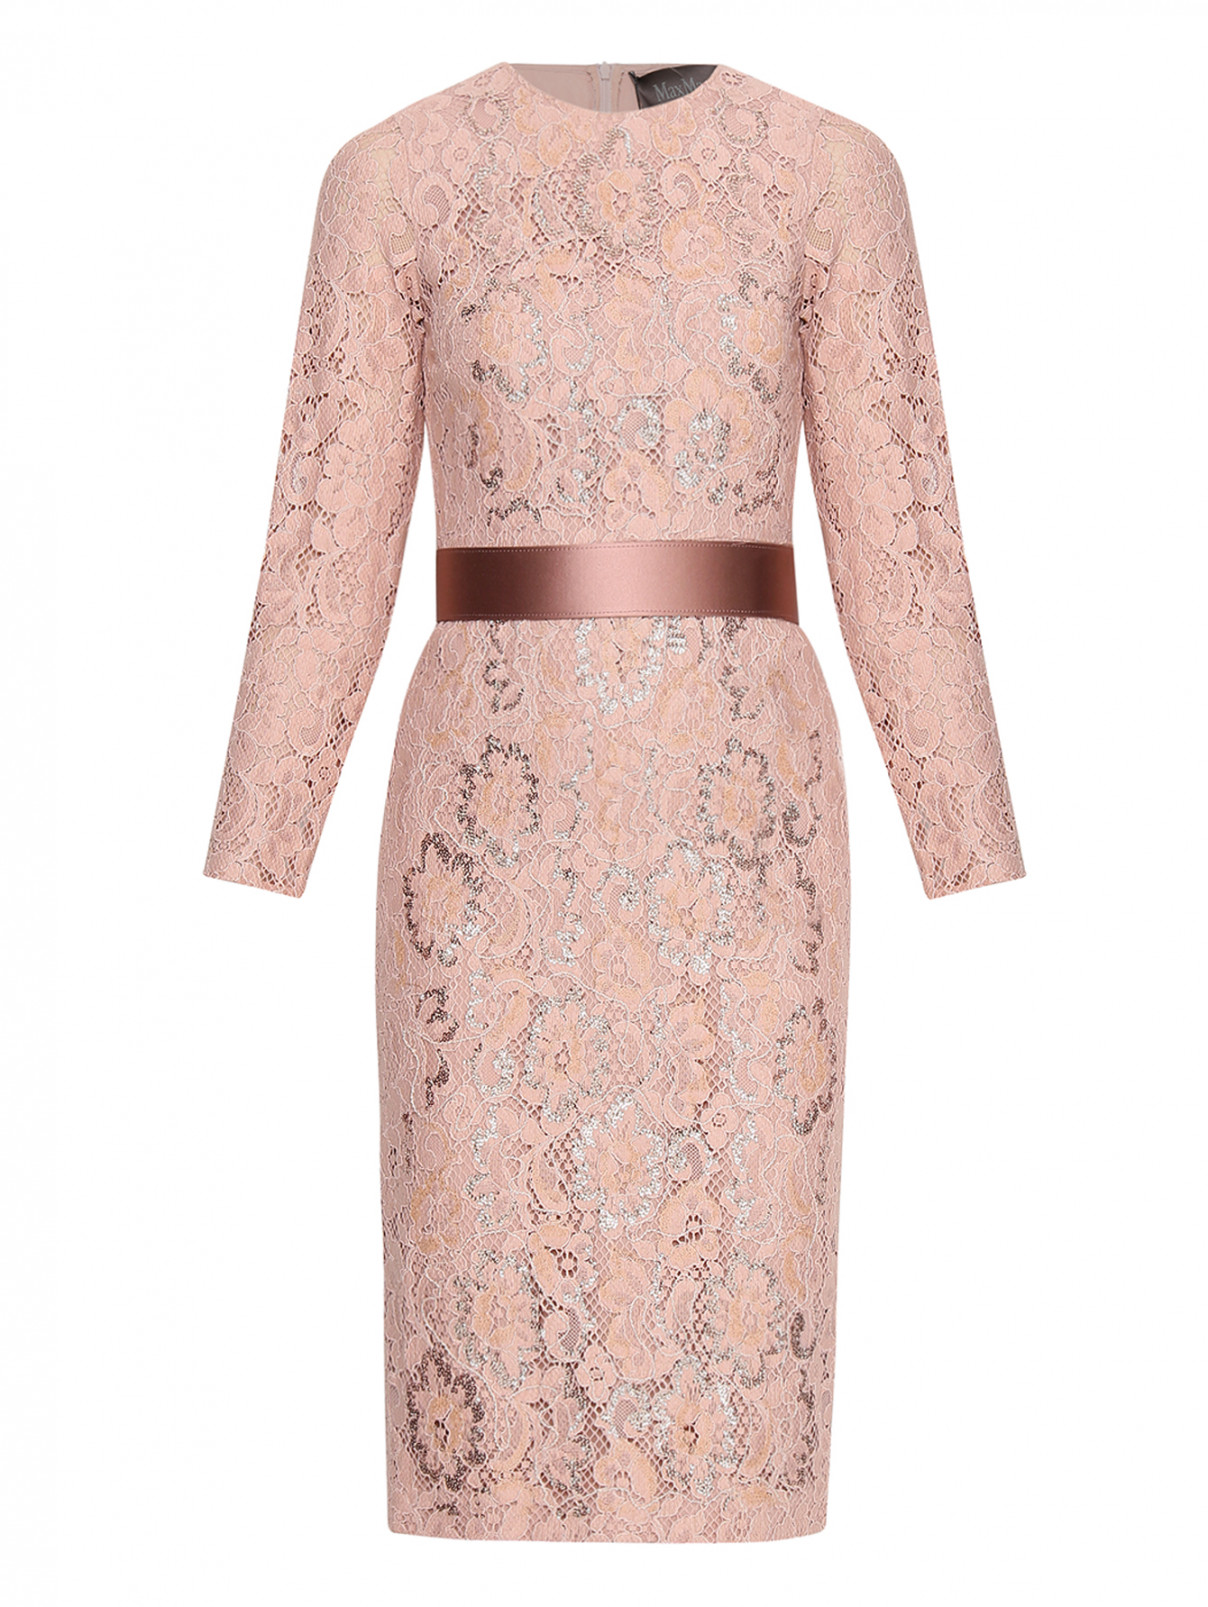 Платье-футляр из шелкового кружева Max Mara  –  Общий вид  – Цвет:  Розовый